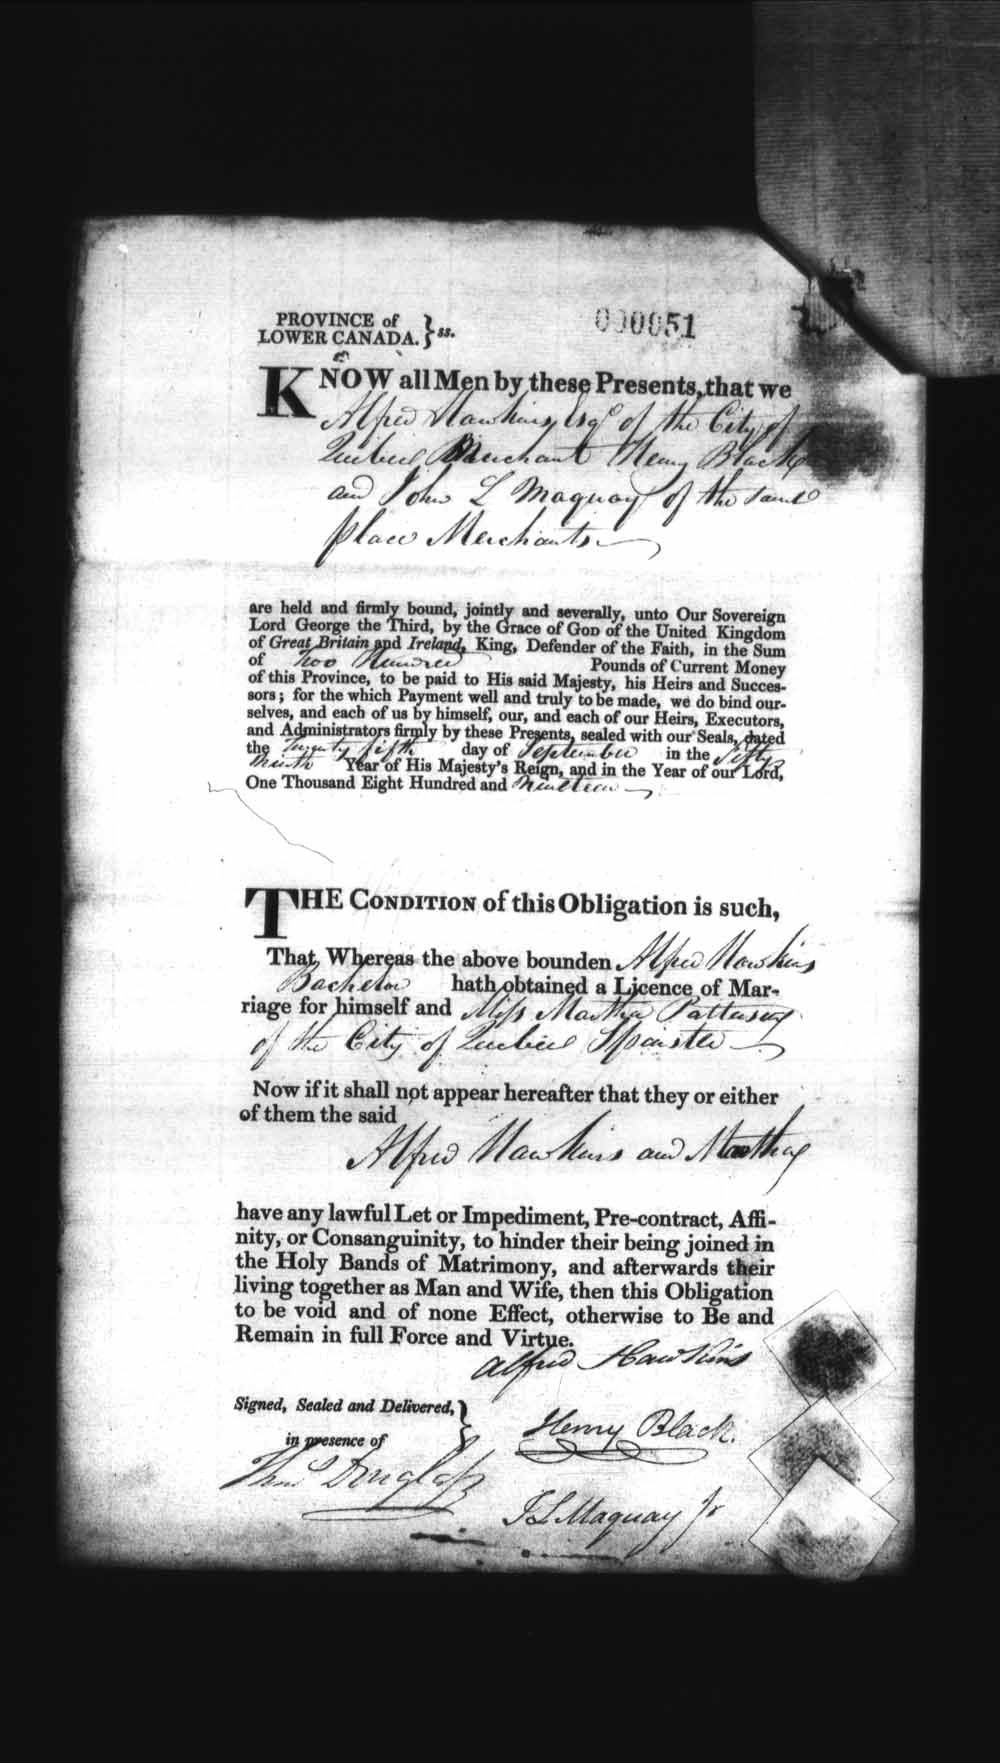 Page numérisé de Cautionnements de mariages pour le Haut-Canada et le Bas-Canada (1779-1865) pour l'image numéro: e008235873